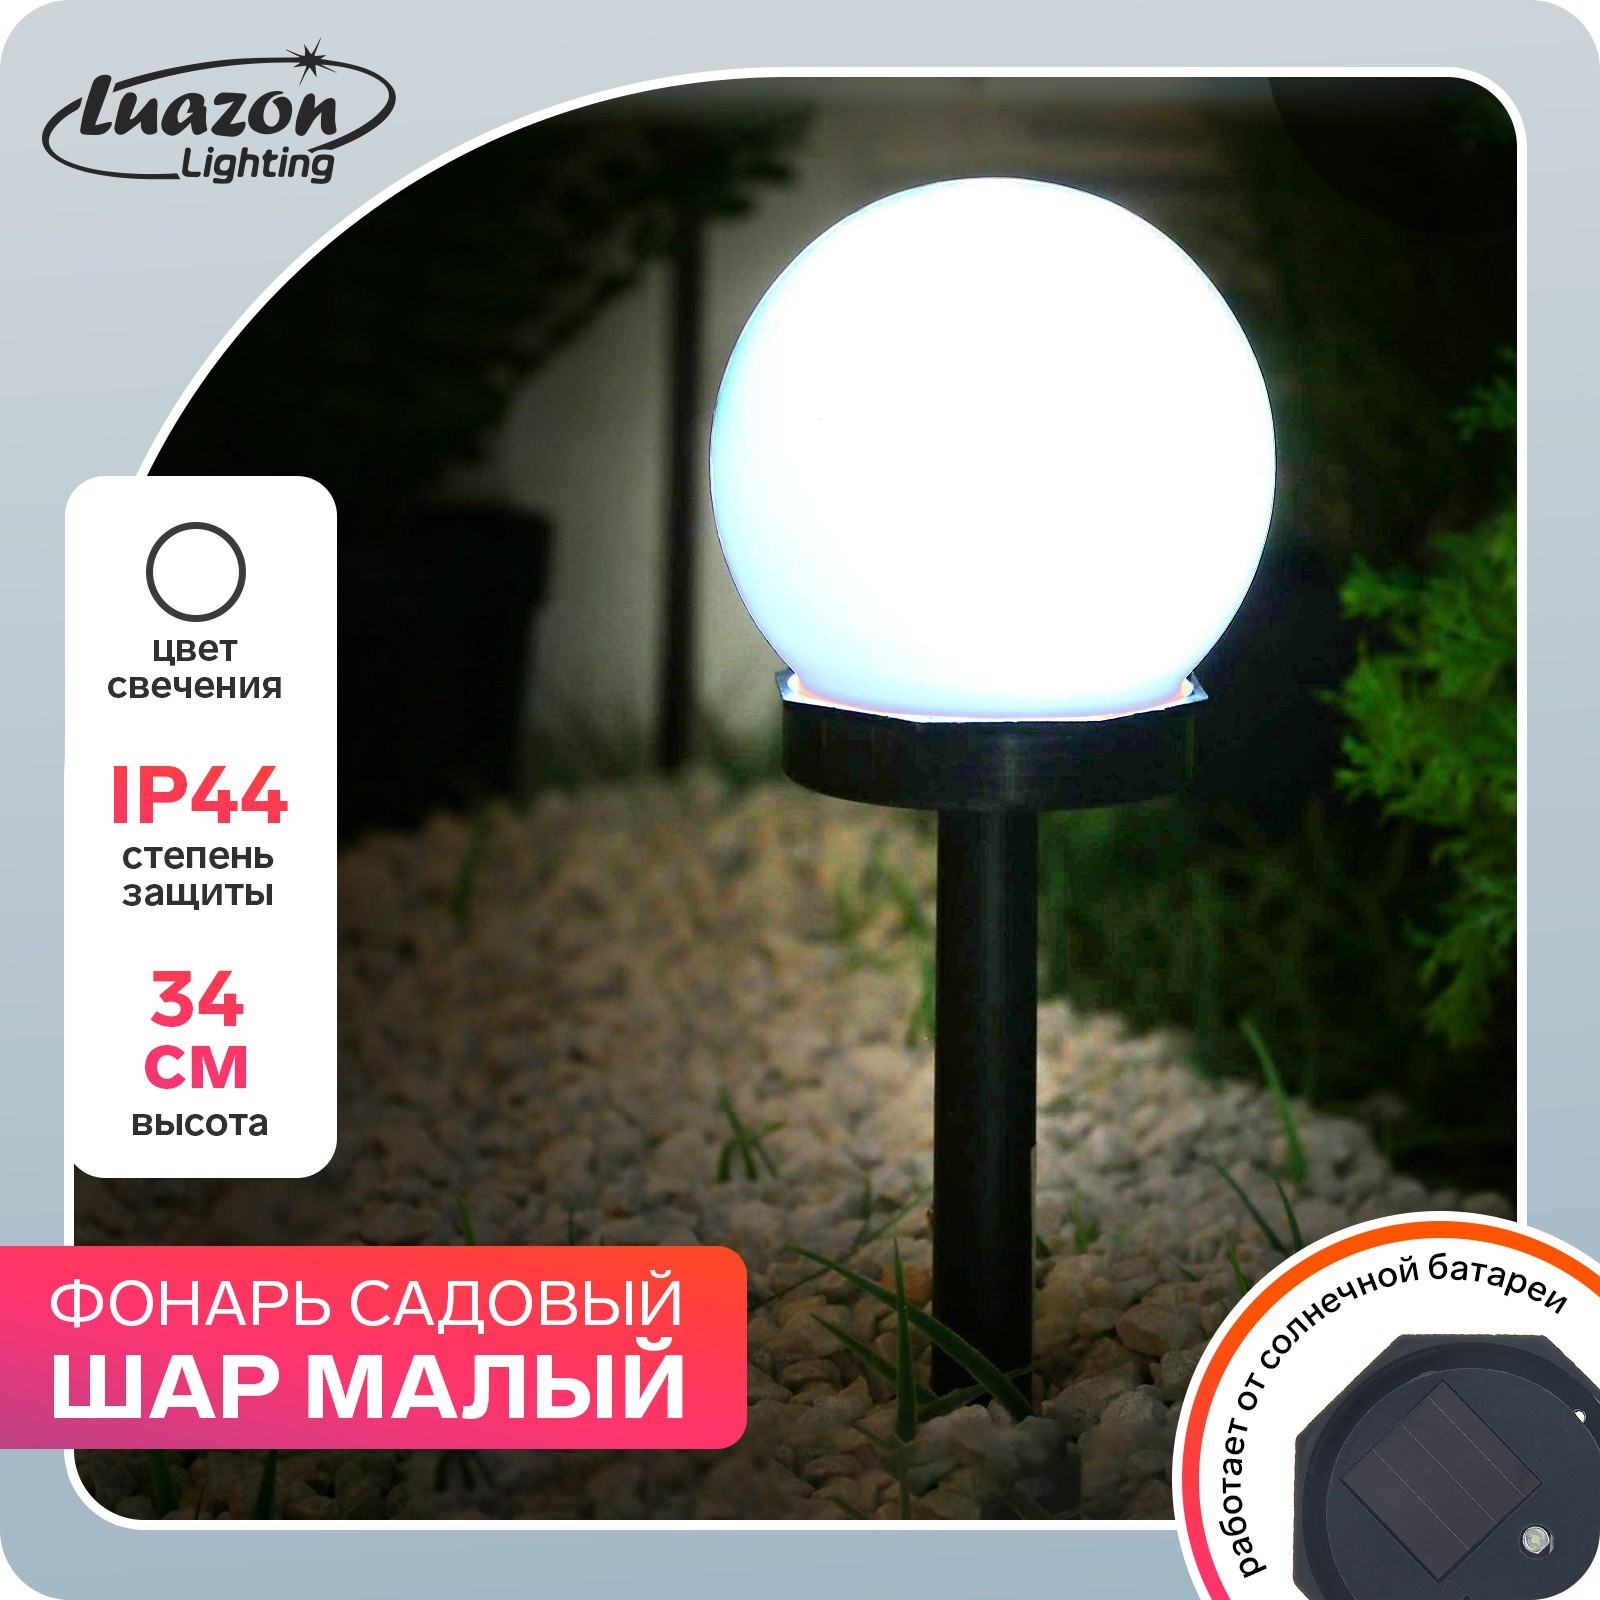 Садовые фонари на солнечных батареях - купить в Москве, цены в интернет-магазине Лазар.